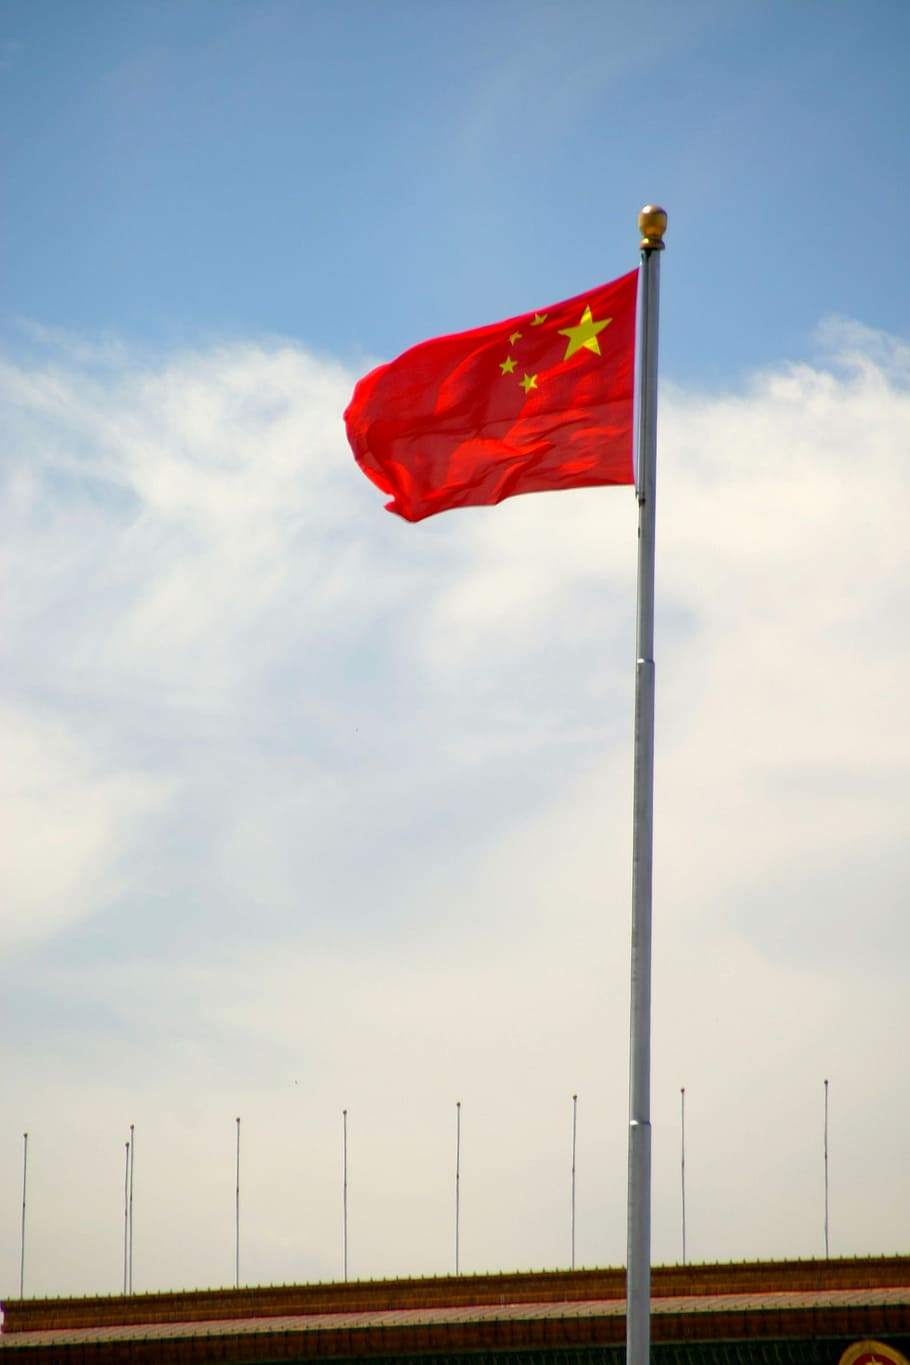 Vermelho, Bandeira, Socialismo, Mastro de bandeira, Vibração, golpe, china, bandeiras, patriotismo, vento